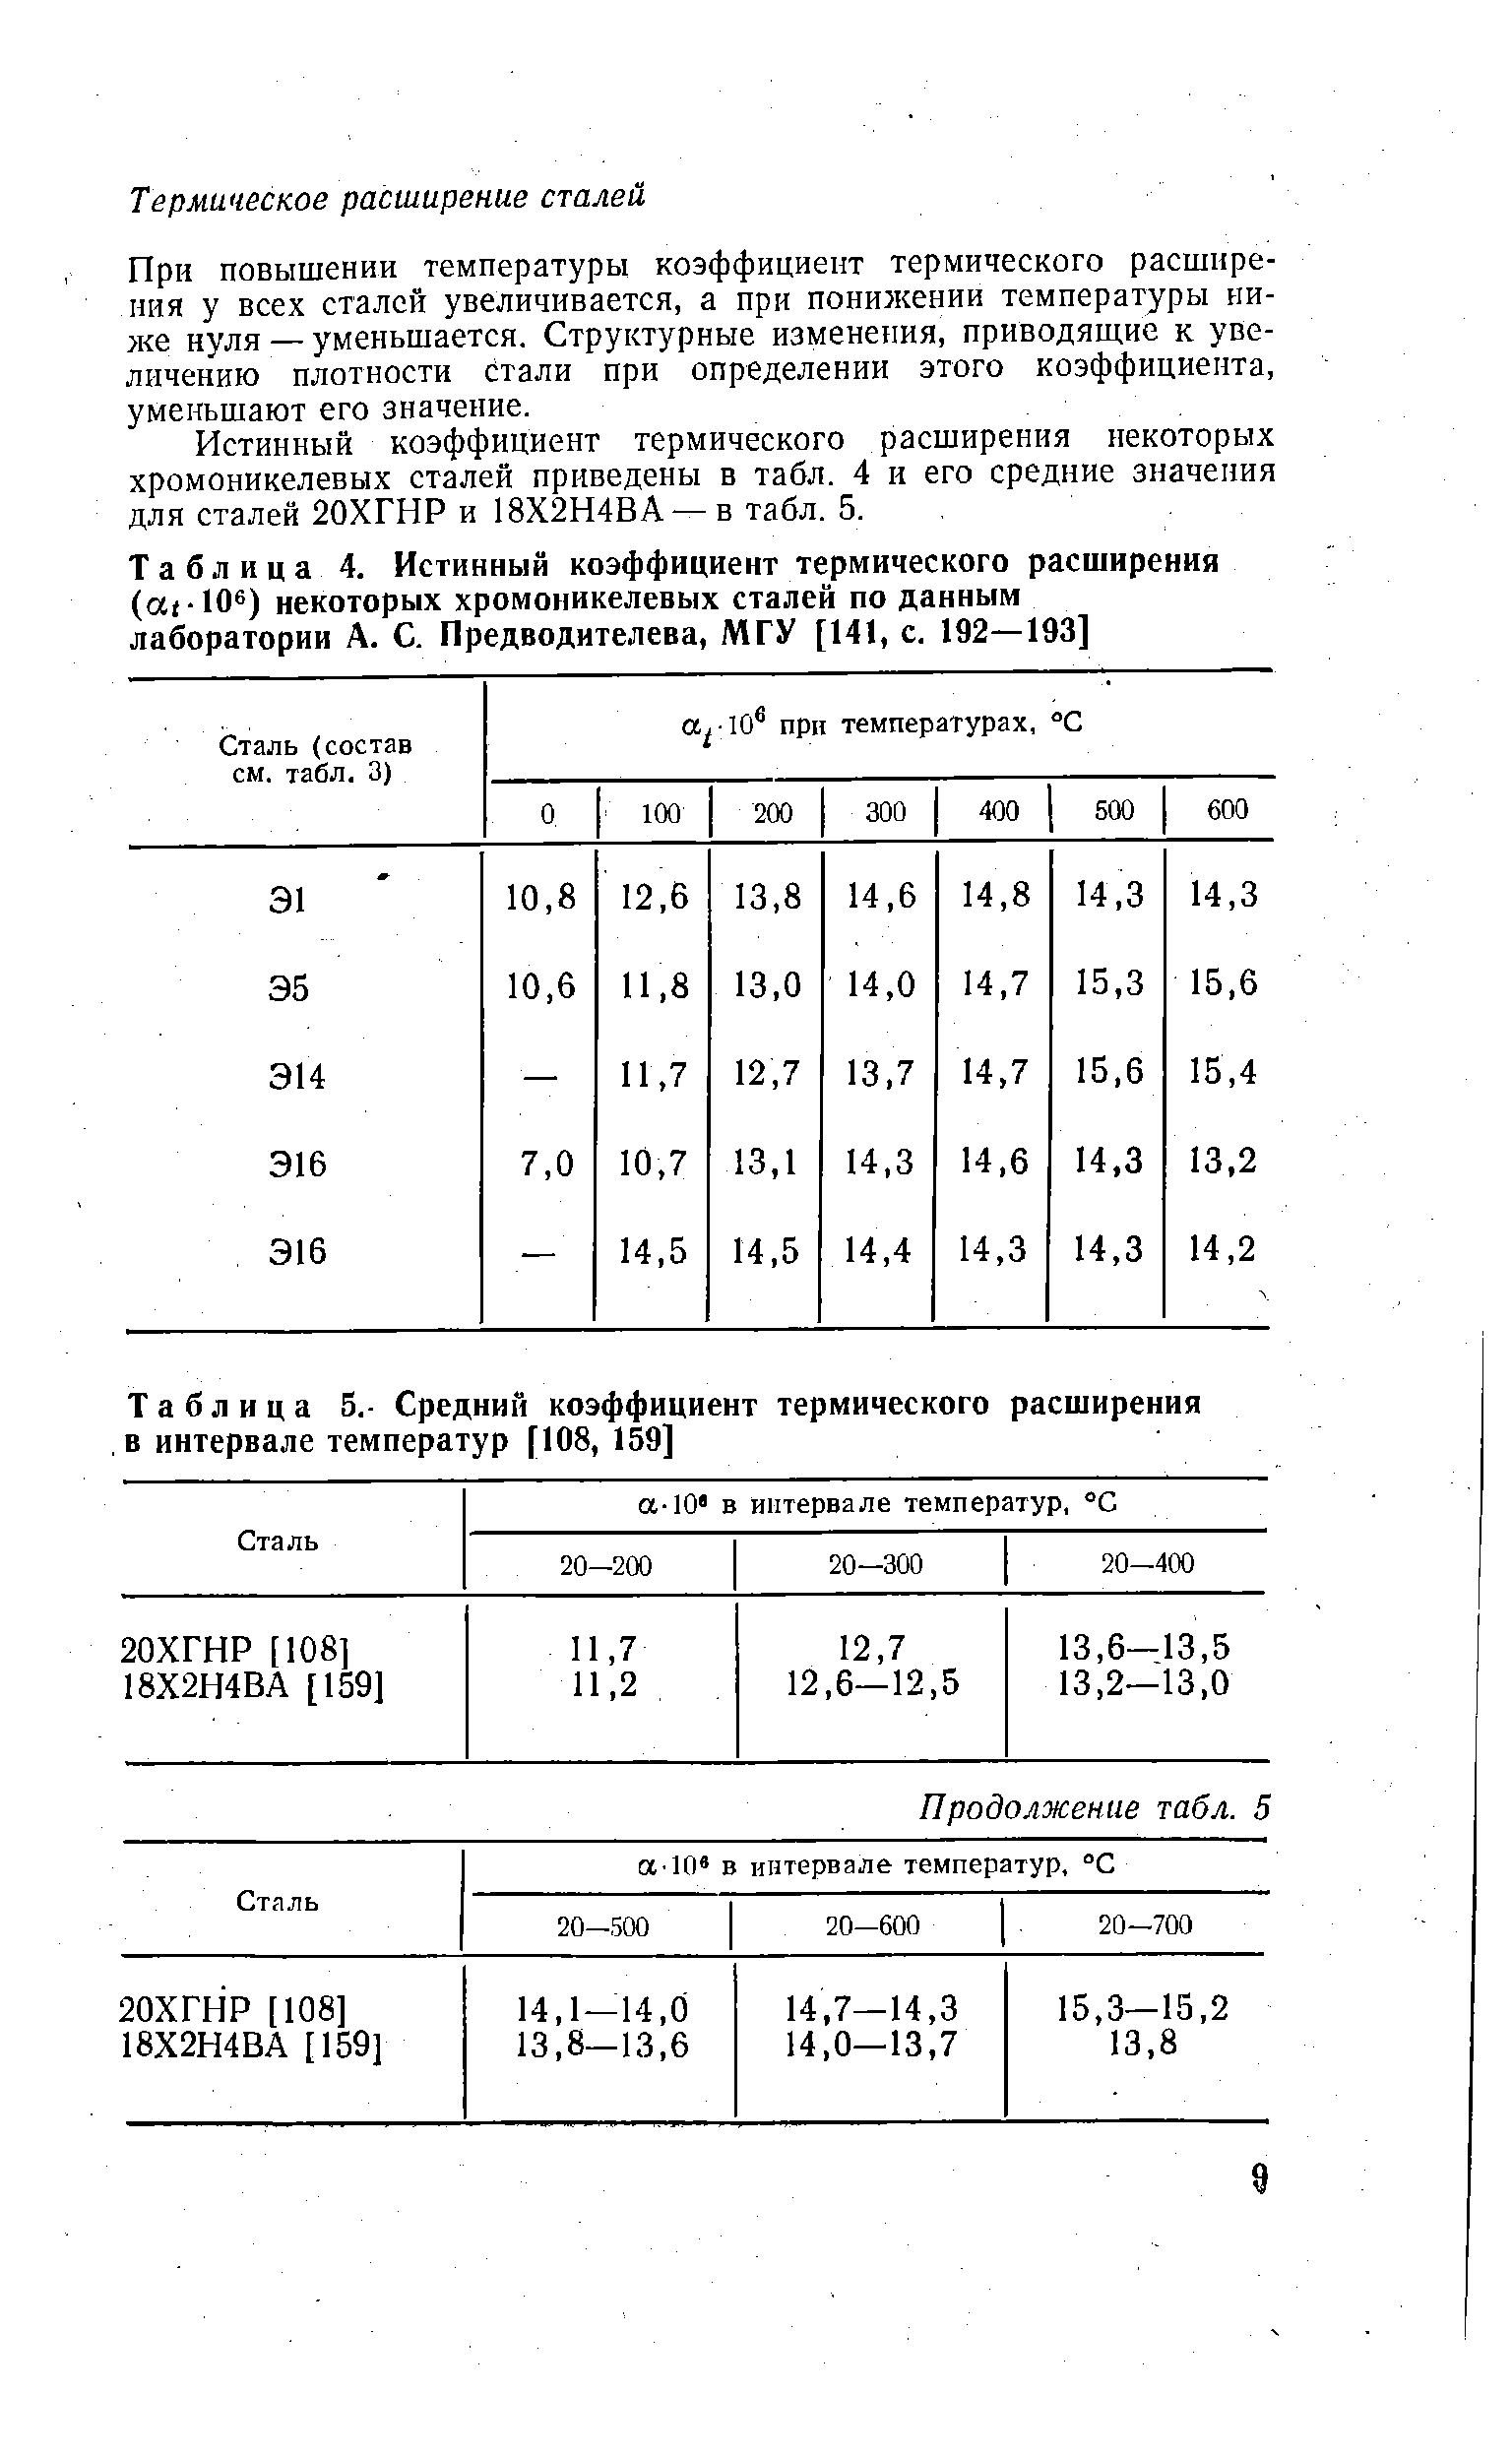 Таблица 4. Истинный коэффициент термического расширения (ас 10 ) некоторых хромоникелевых сталей по данным лаборатории А. С. Предводителева, МГУ [141, с. 192—193]
